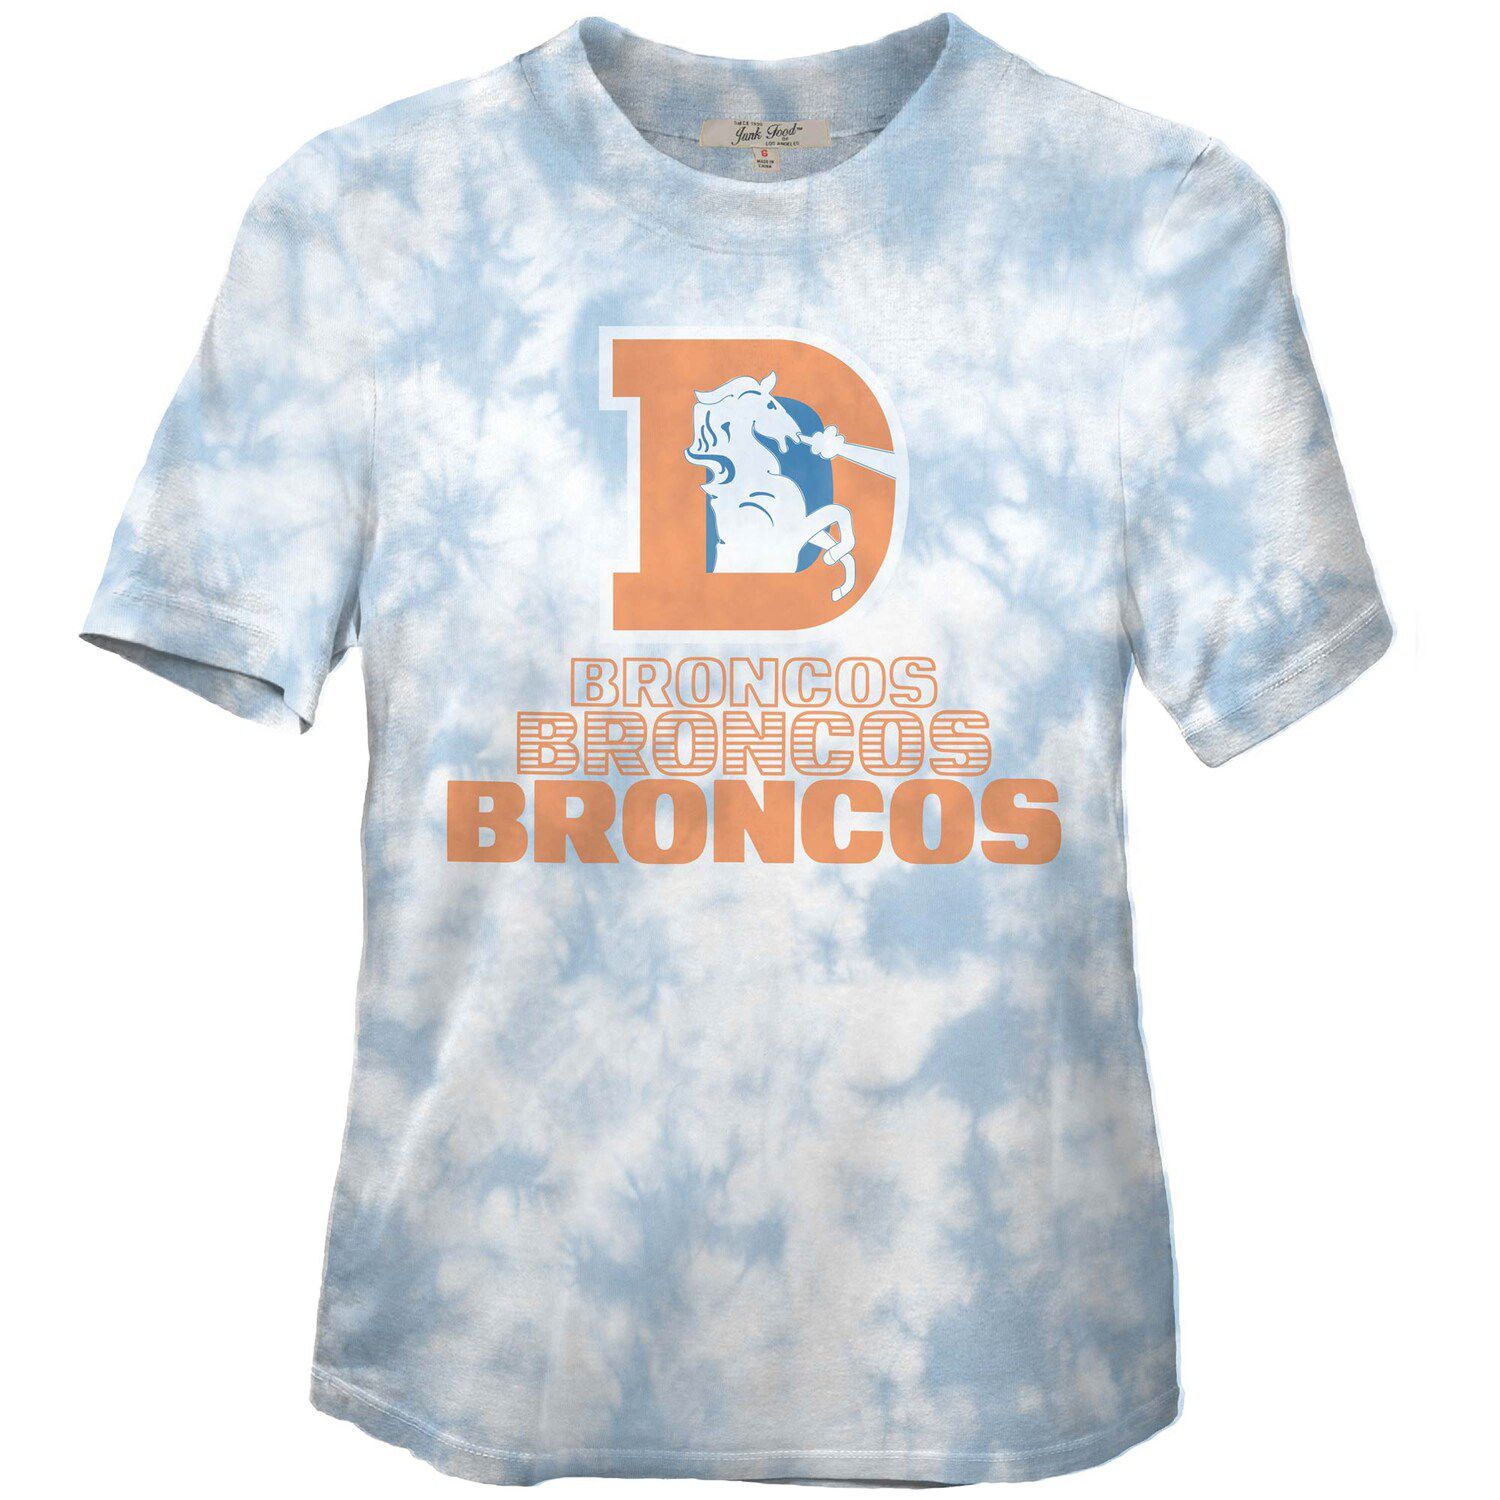 Image for Unbranded Women's Junk Food Royal Denver Broncos Team Spirit Tie-Dye T-Shirt at Kohl's.